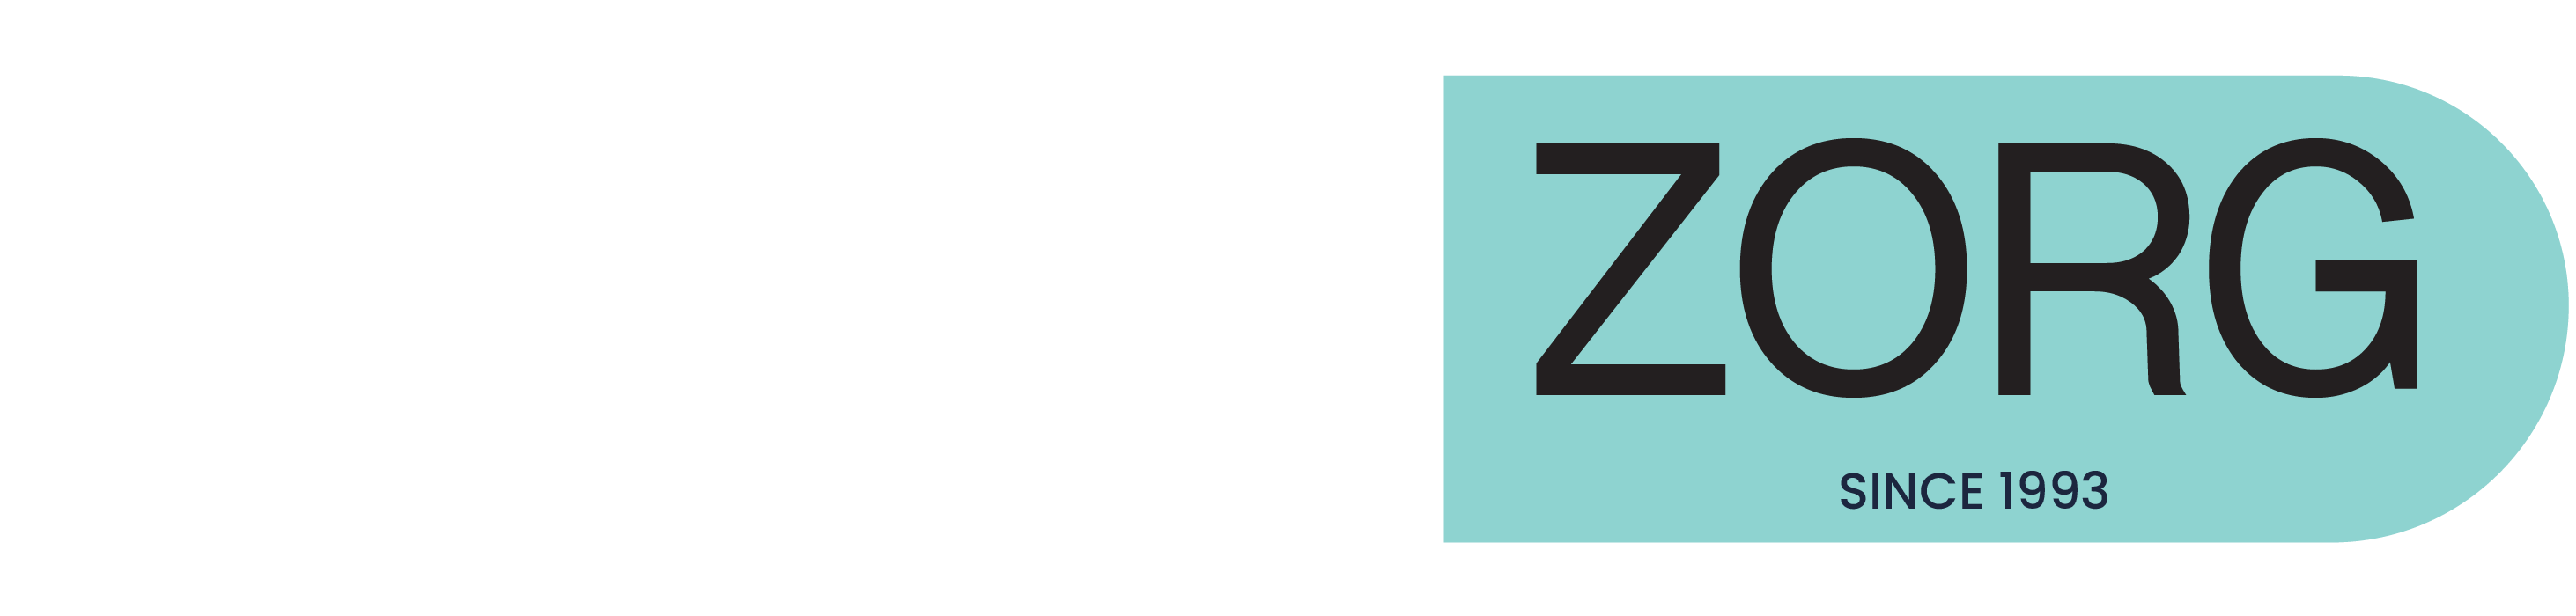 dentalzorg identety blue logo